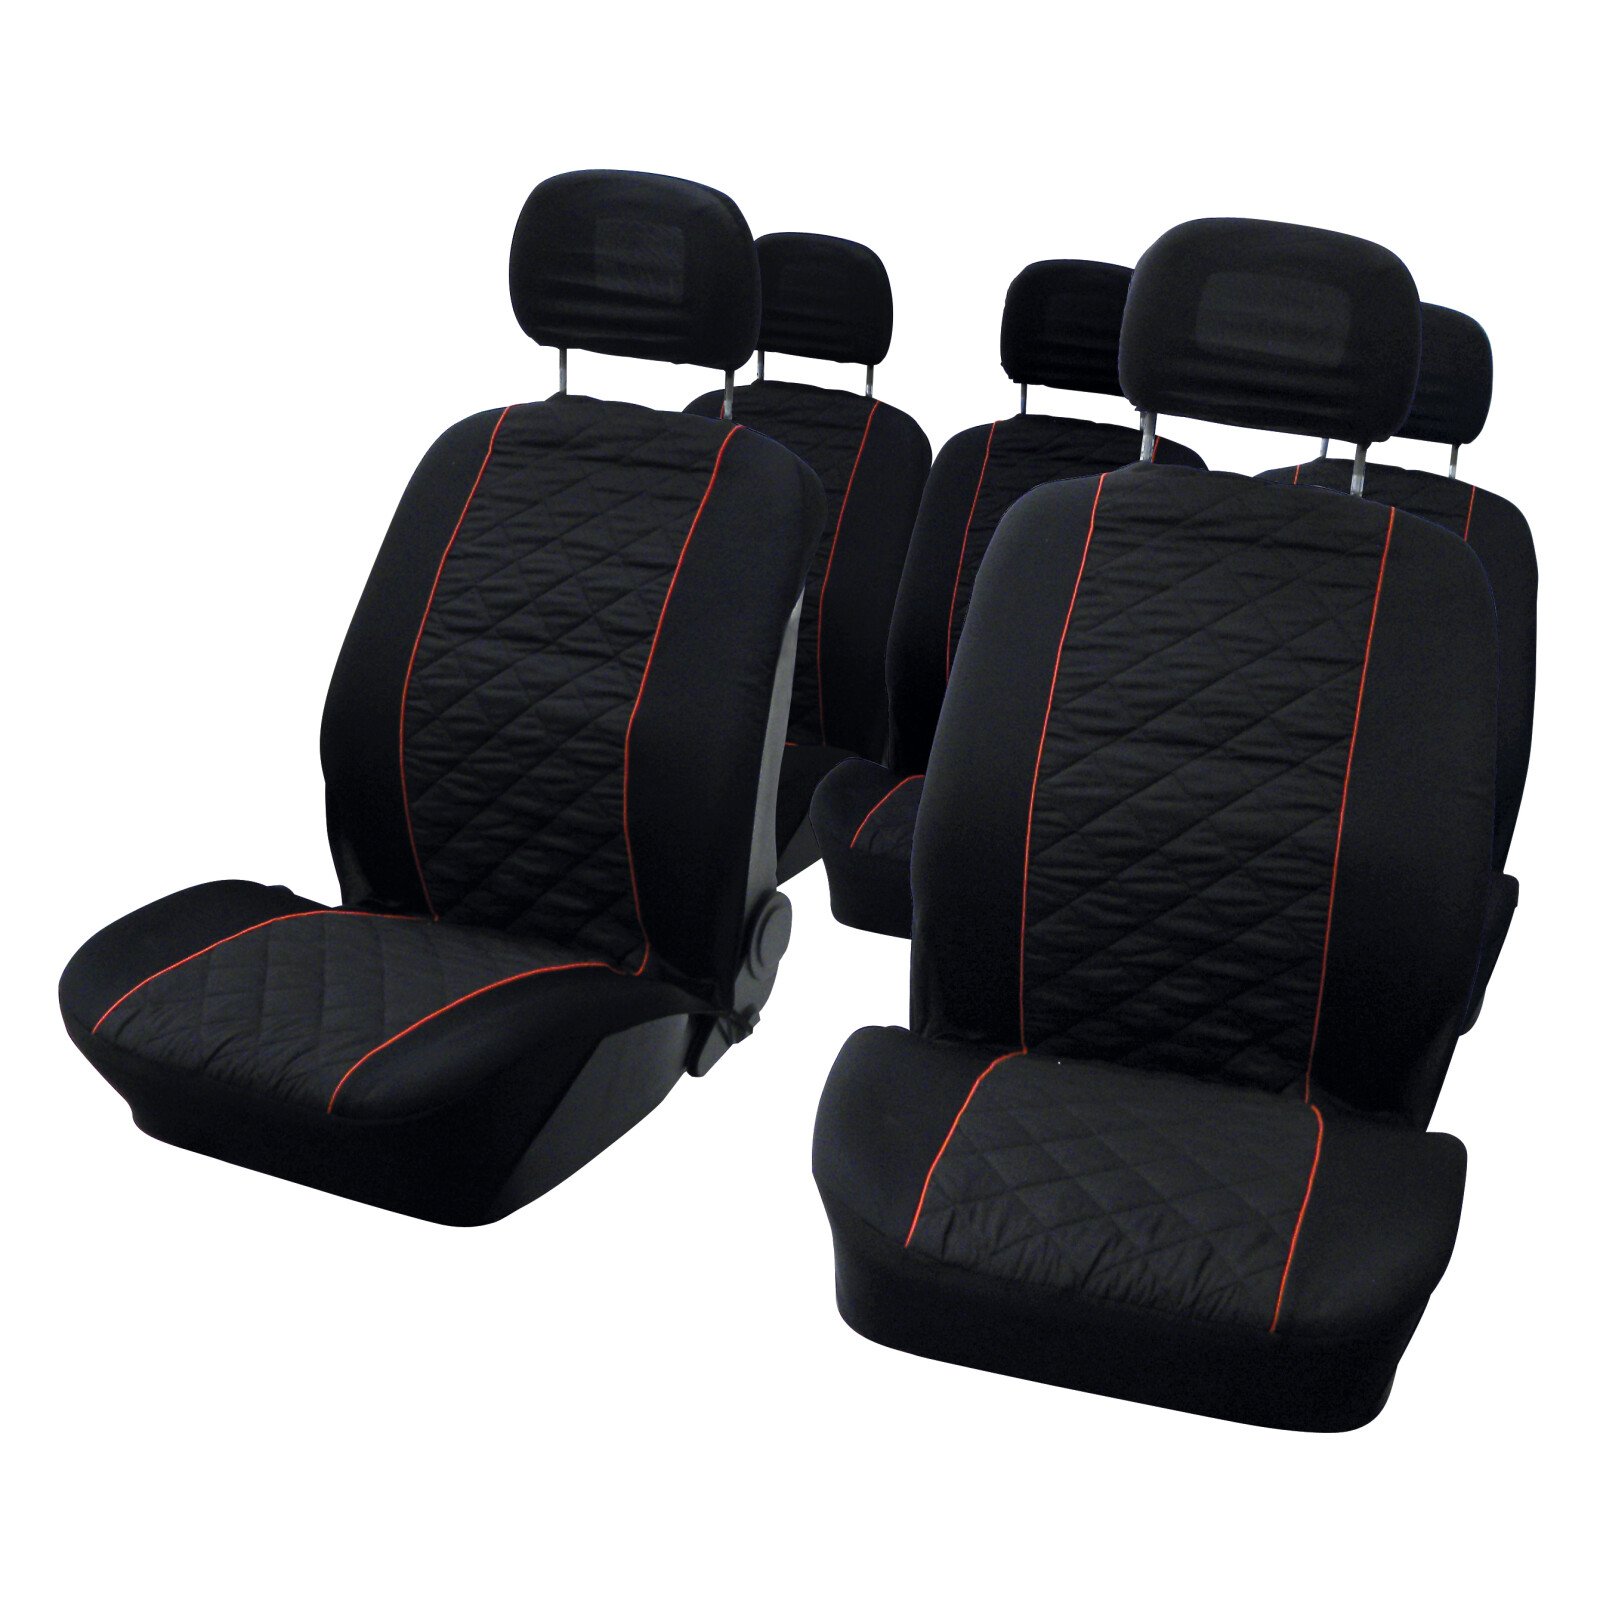 Carpoint MPV seat covers 10pcs - Black/Red thumb